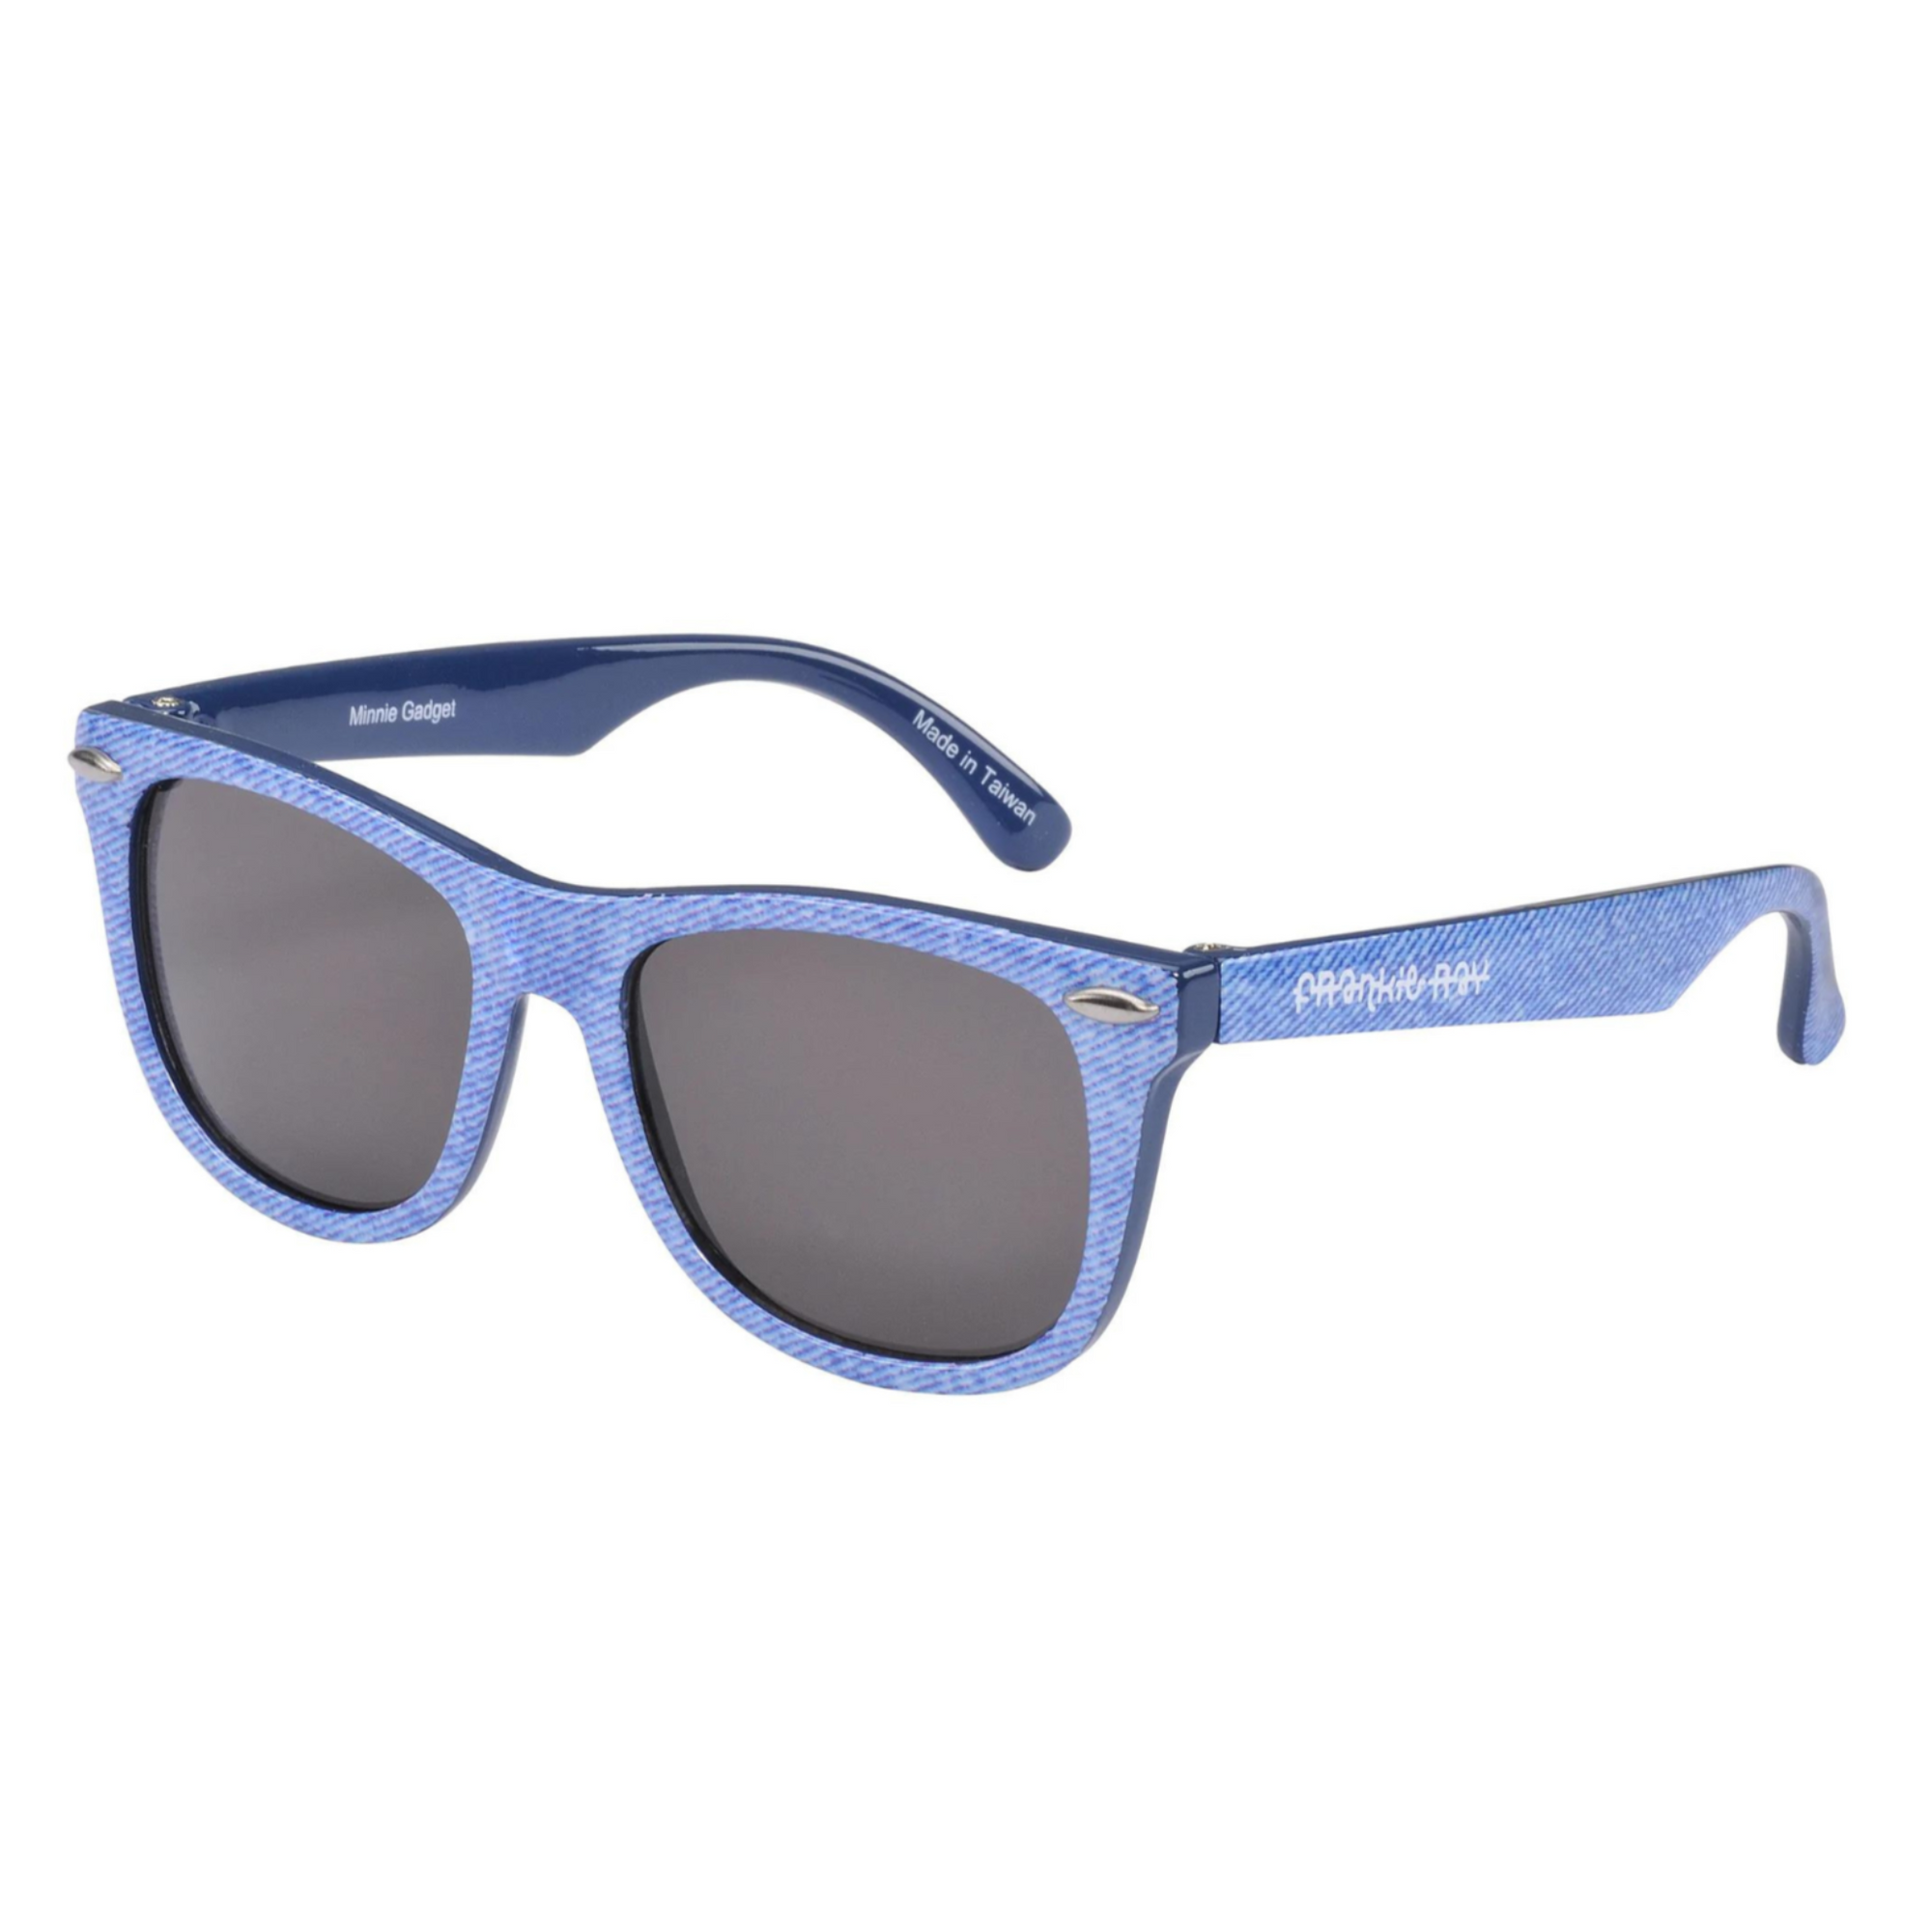 Frankie Ray Sunglasses - Mini Gadget Blue Denim